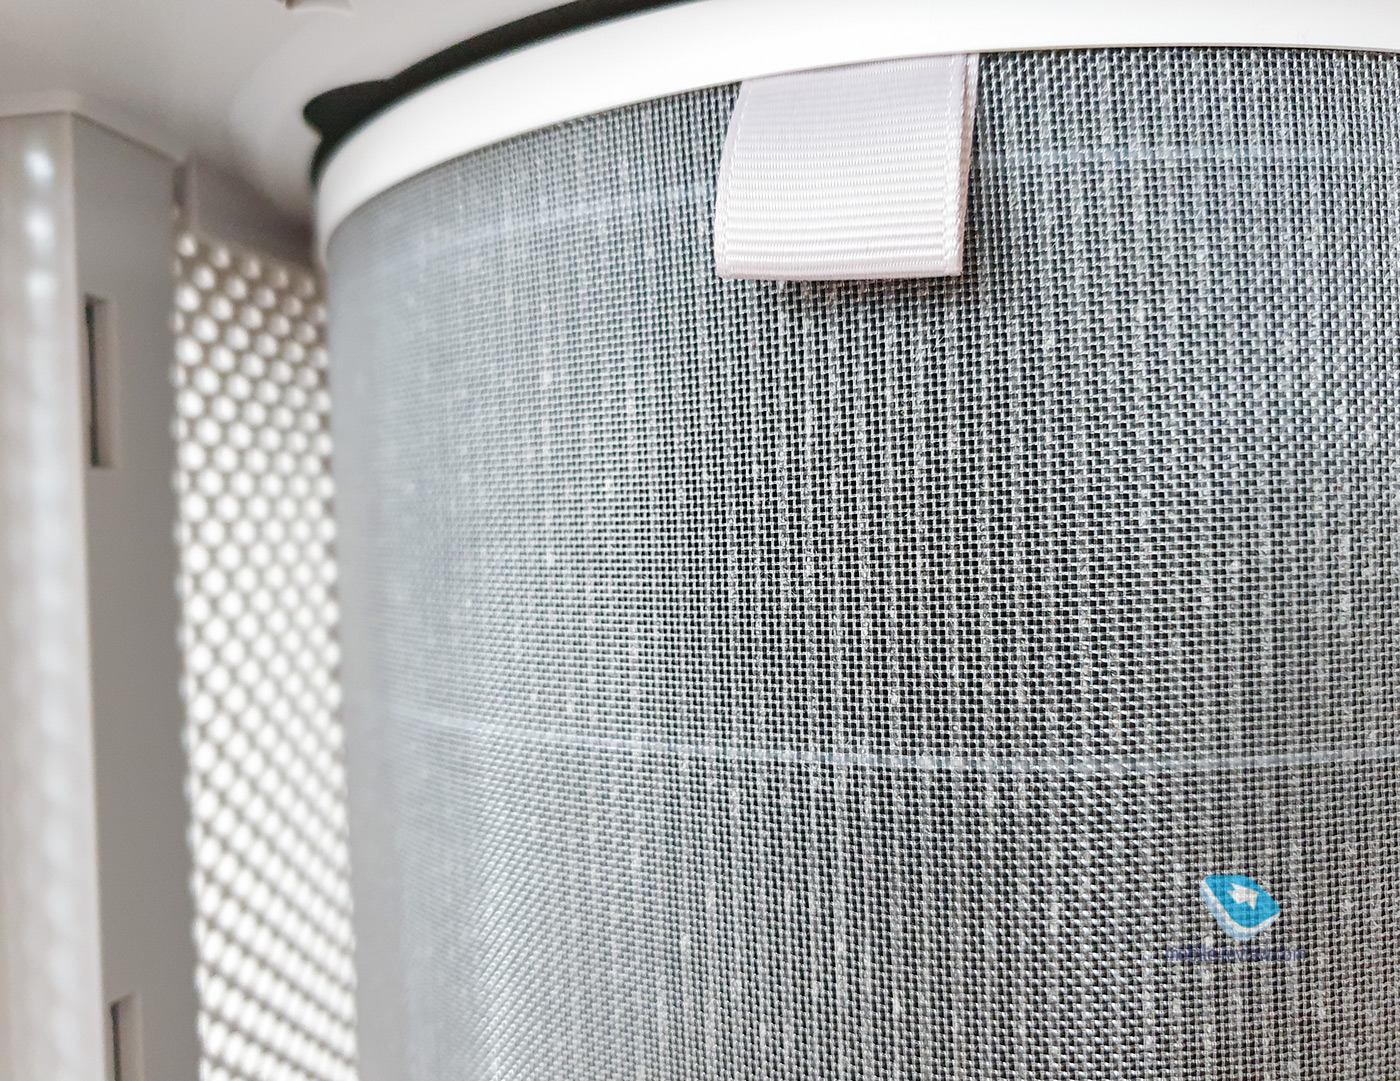 Xiaomi Mi Air Purifier 3H: clean air for every home!